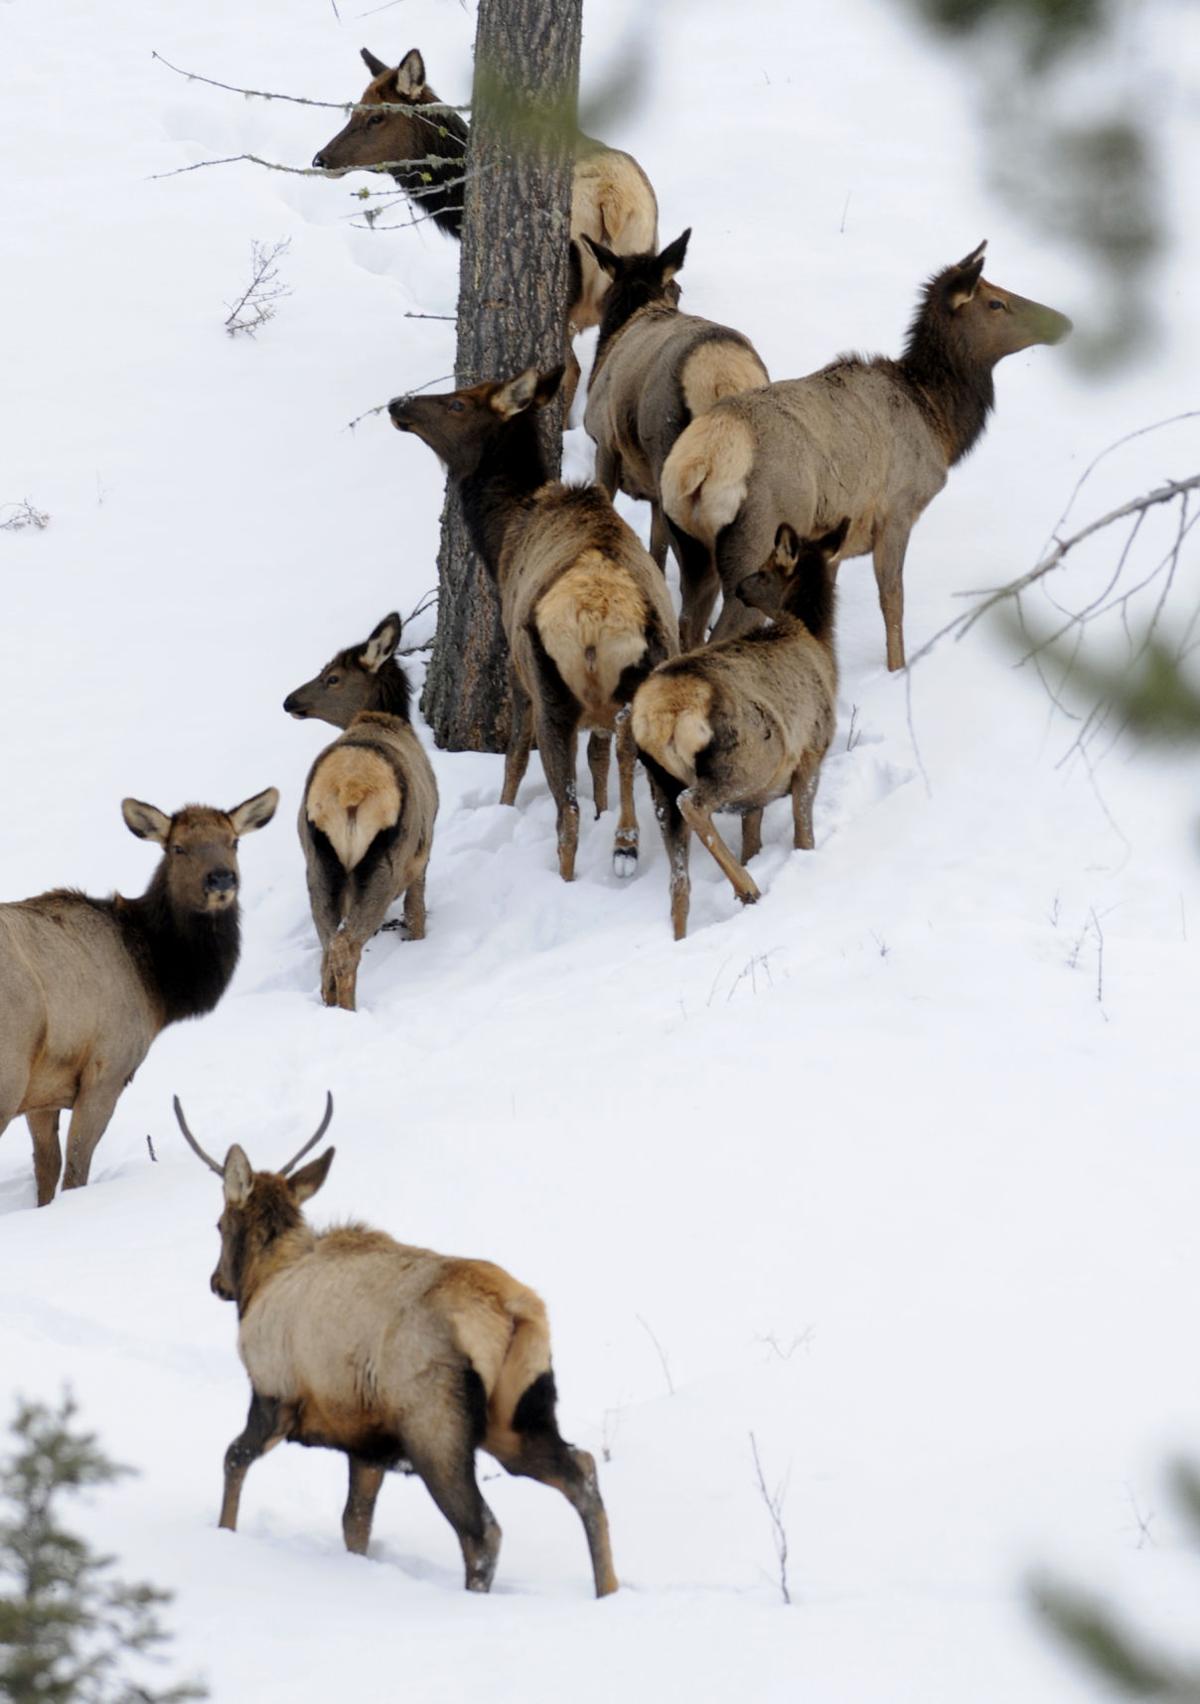 FWP considers elk shoulder seasons across Montana State & Regional